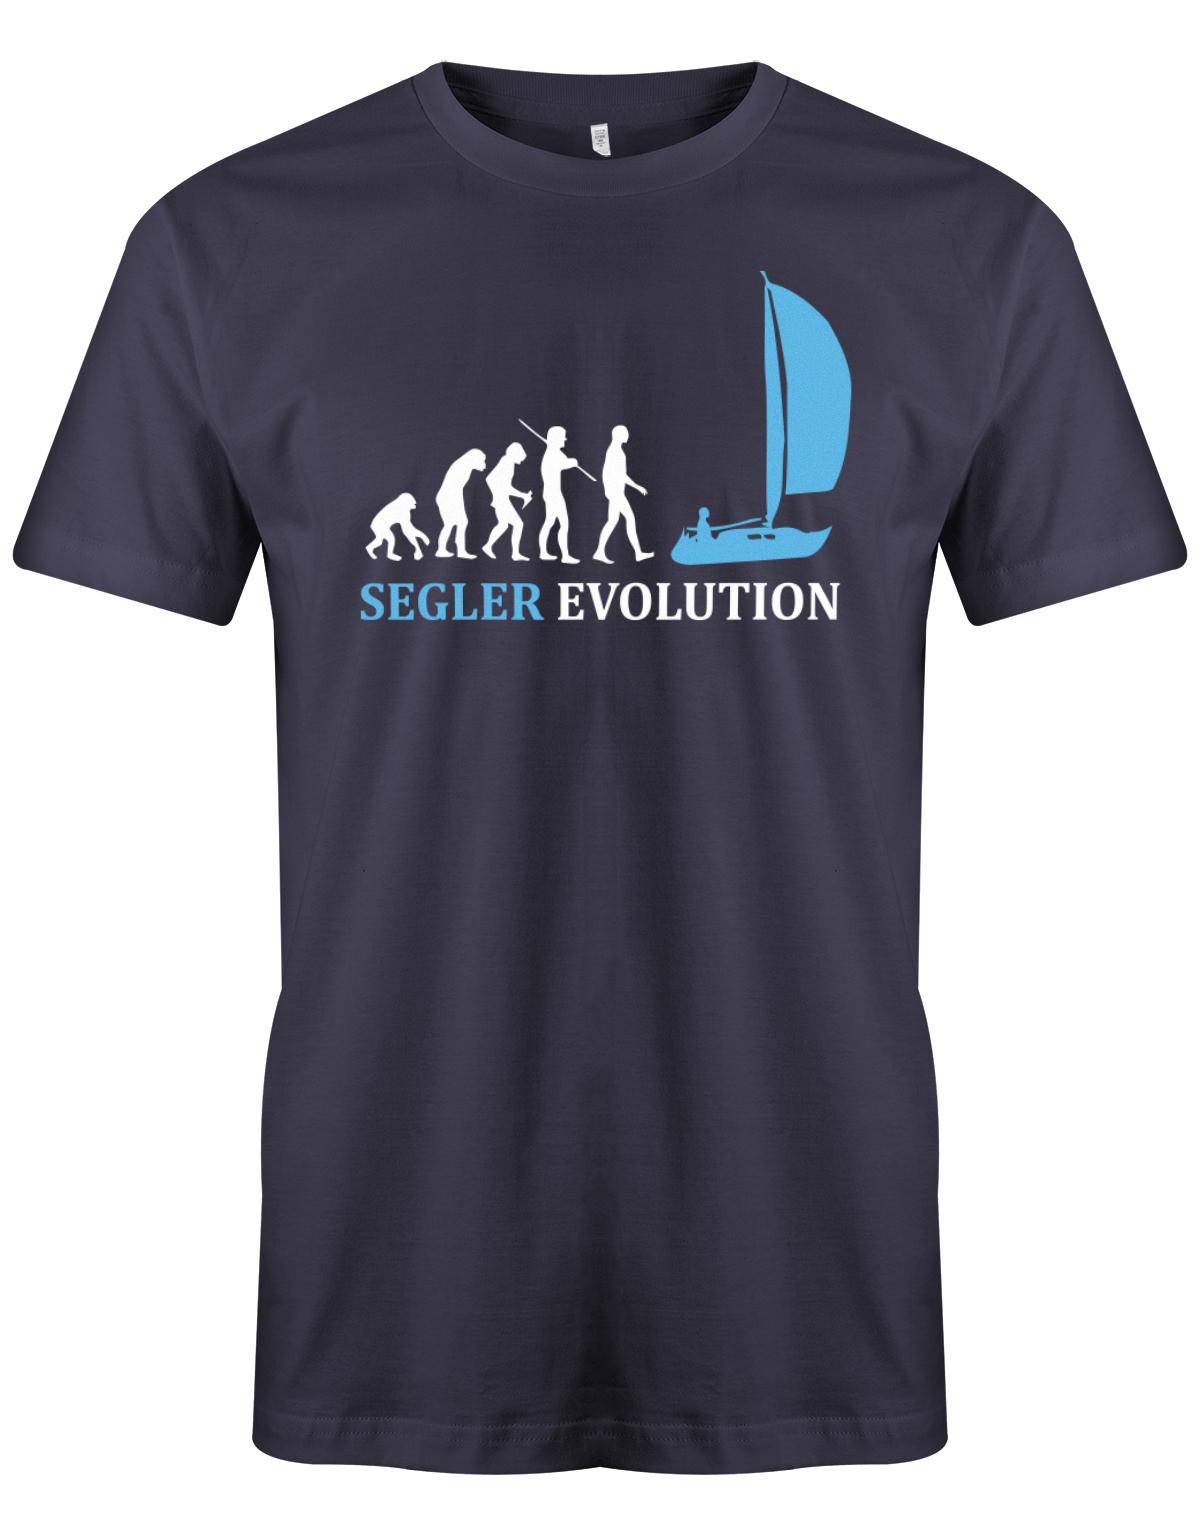 Das Segler t-shirt bedruckt mit "Die Segler Revolution vom Affen zum Segler". Navy